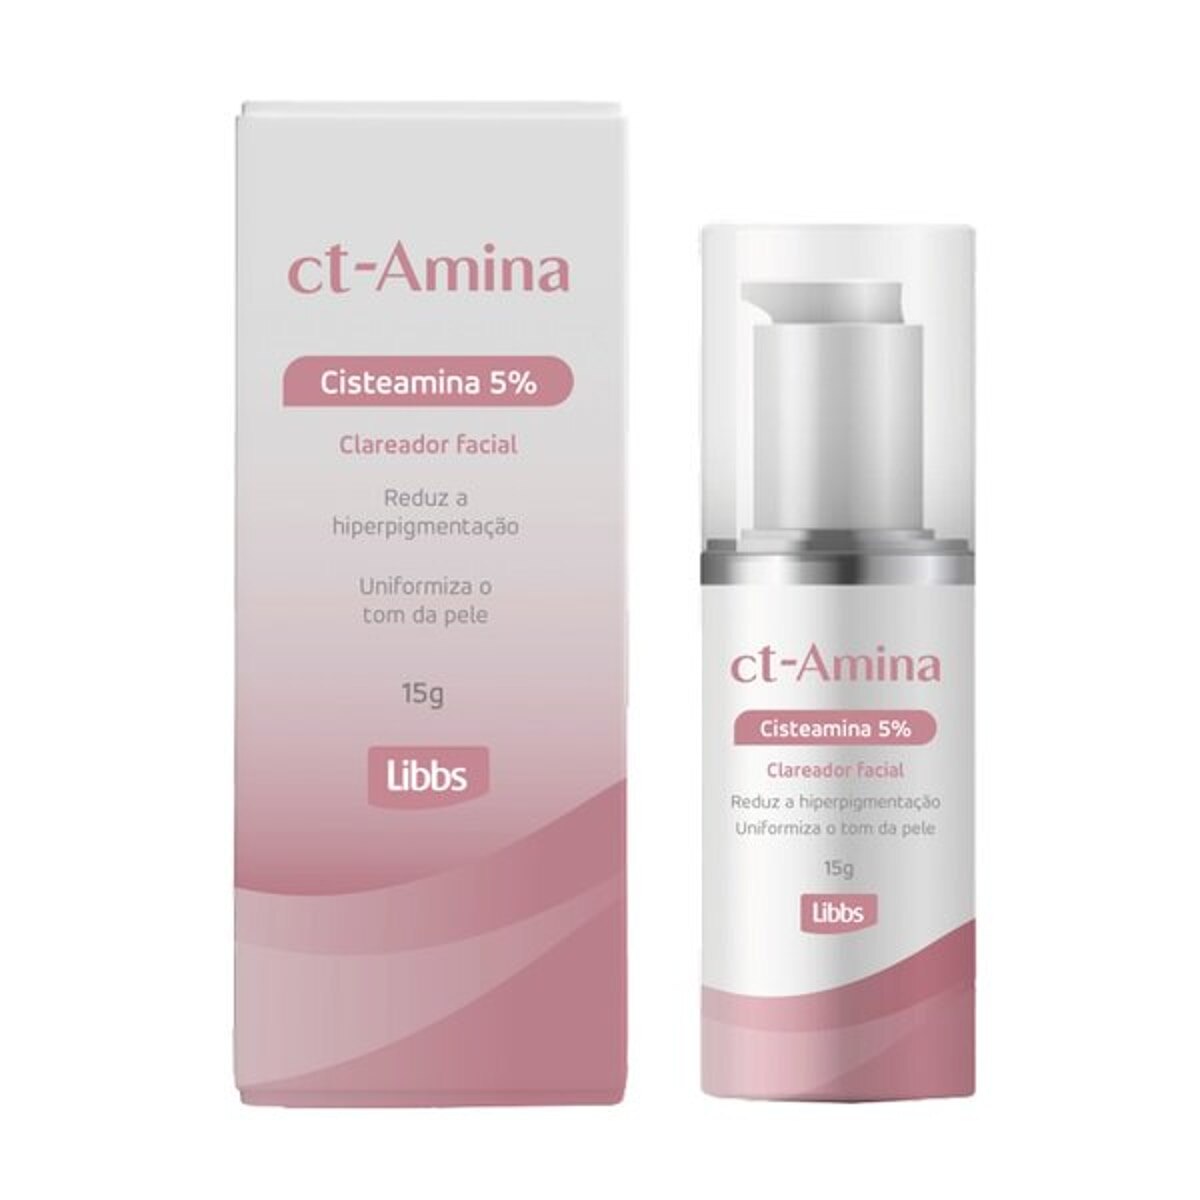 Clareador Facial Ct-Amina Cisteamina 5% 15g